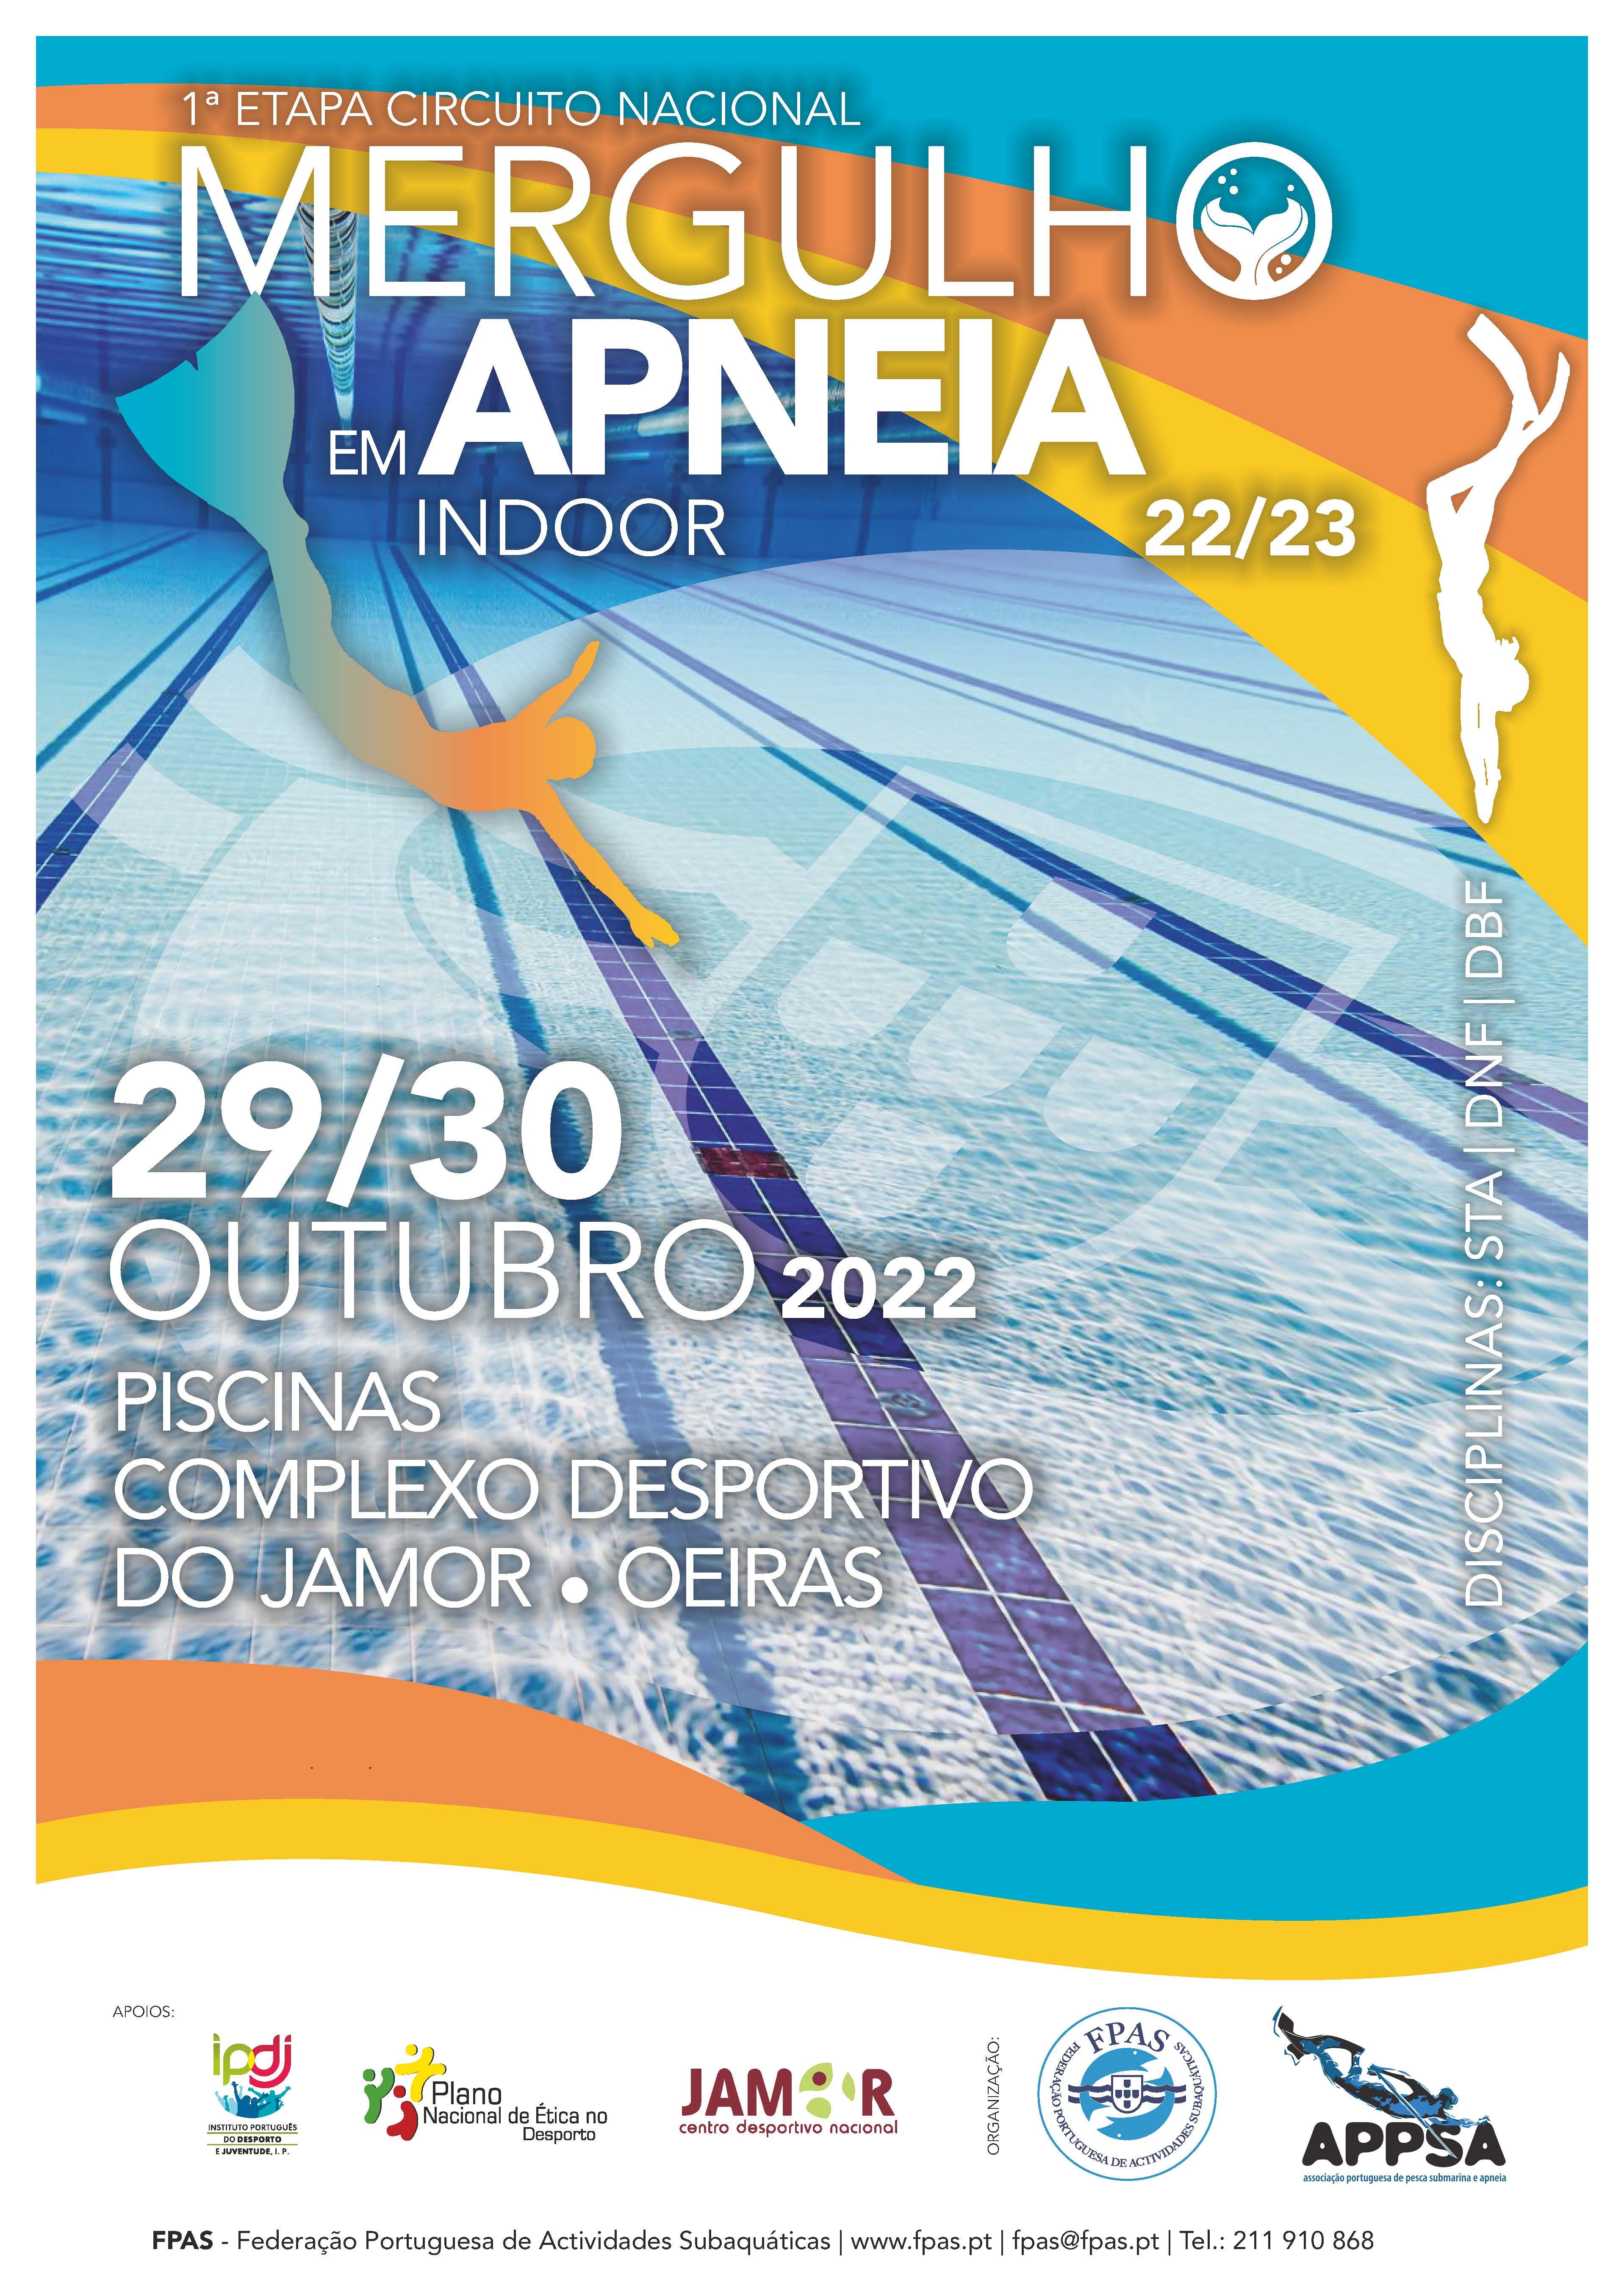 FPAS - Classificação - 1ª Etapa do Circuito Nacional de Mergulho em Apneia  Indoor 2022/2023